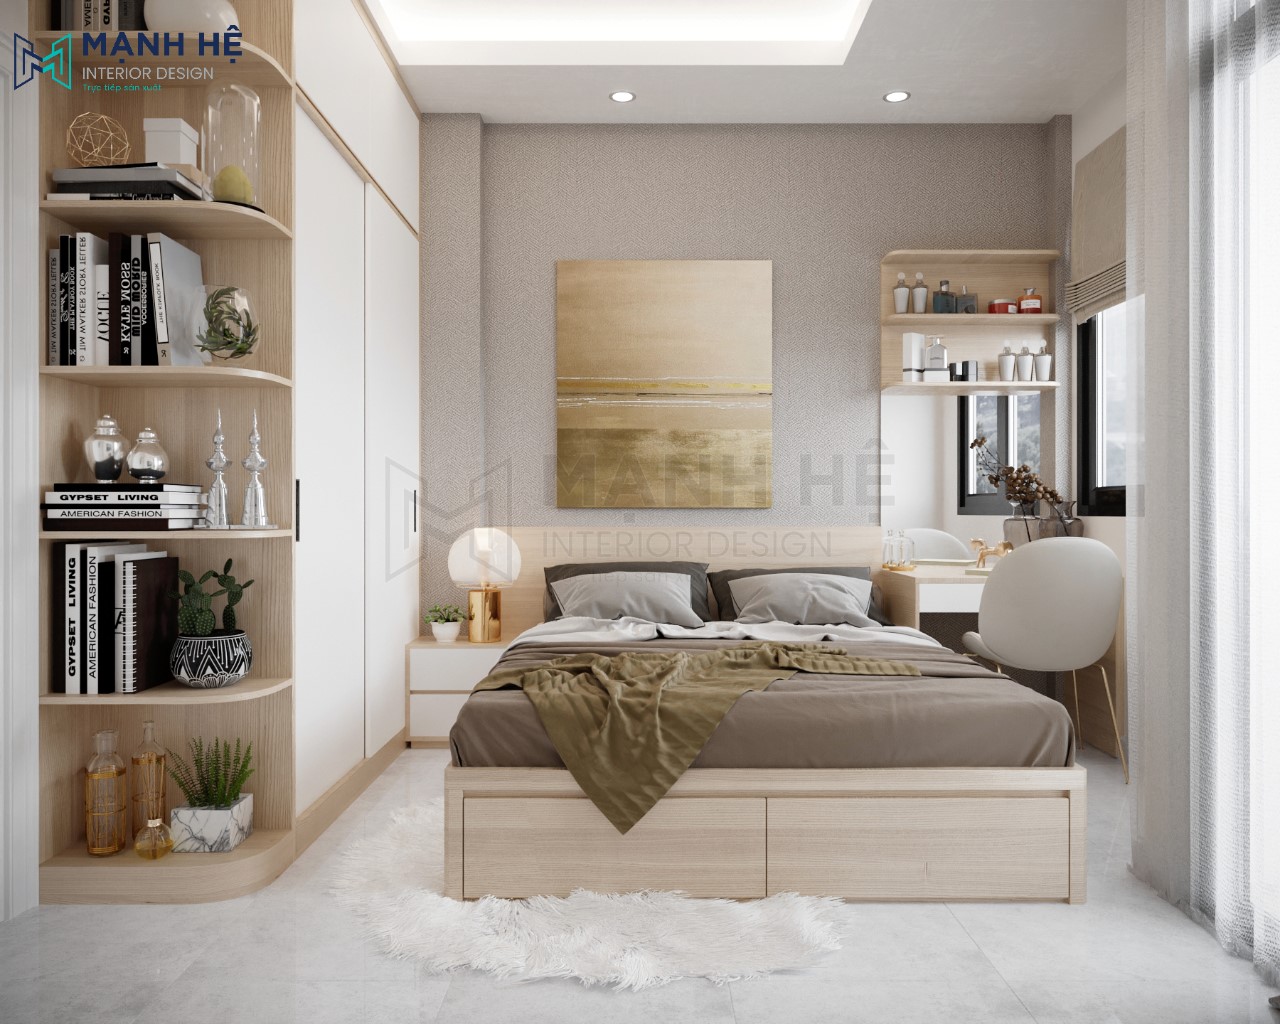 Vách ốp gỗ đầu giường vừa mang vẻ đẹp hiện đại cho căn phòng vừa tạo cảm giác sạch sẽ khi nằm thư giãn